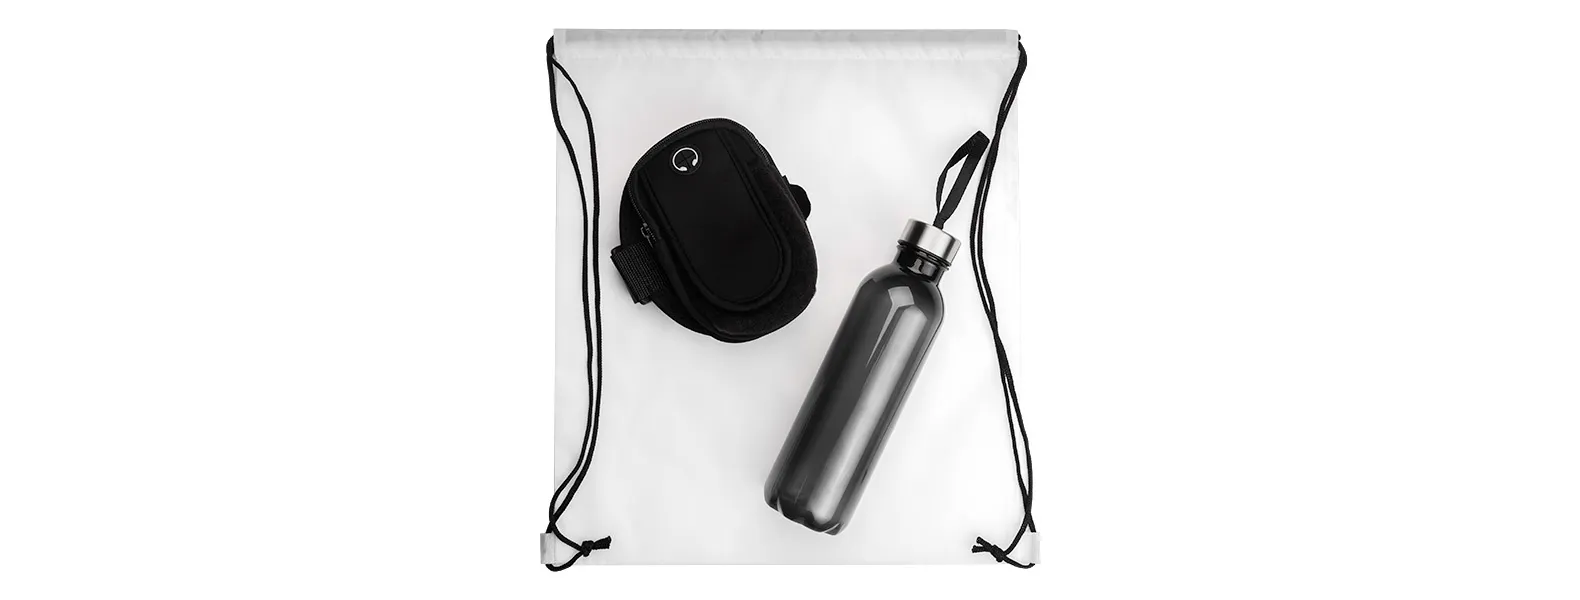 Kit boas vindas. Conta com mochila em nylon 420 branca; garrafa pet na cor preta e braçadeira esportiva para celular.